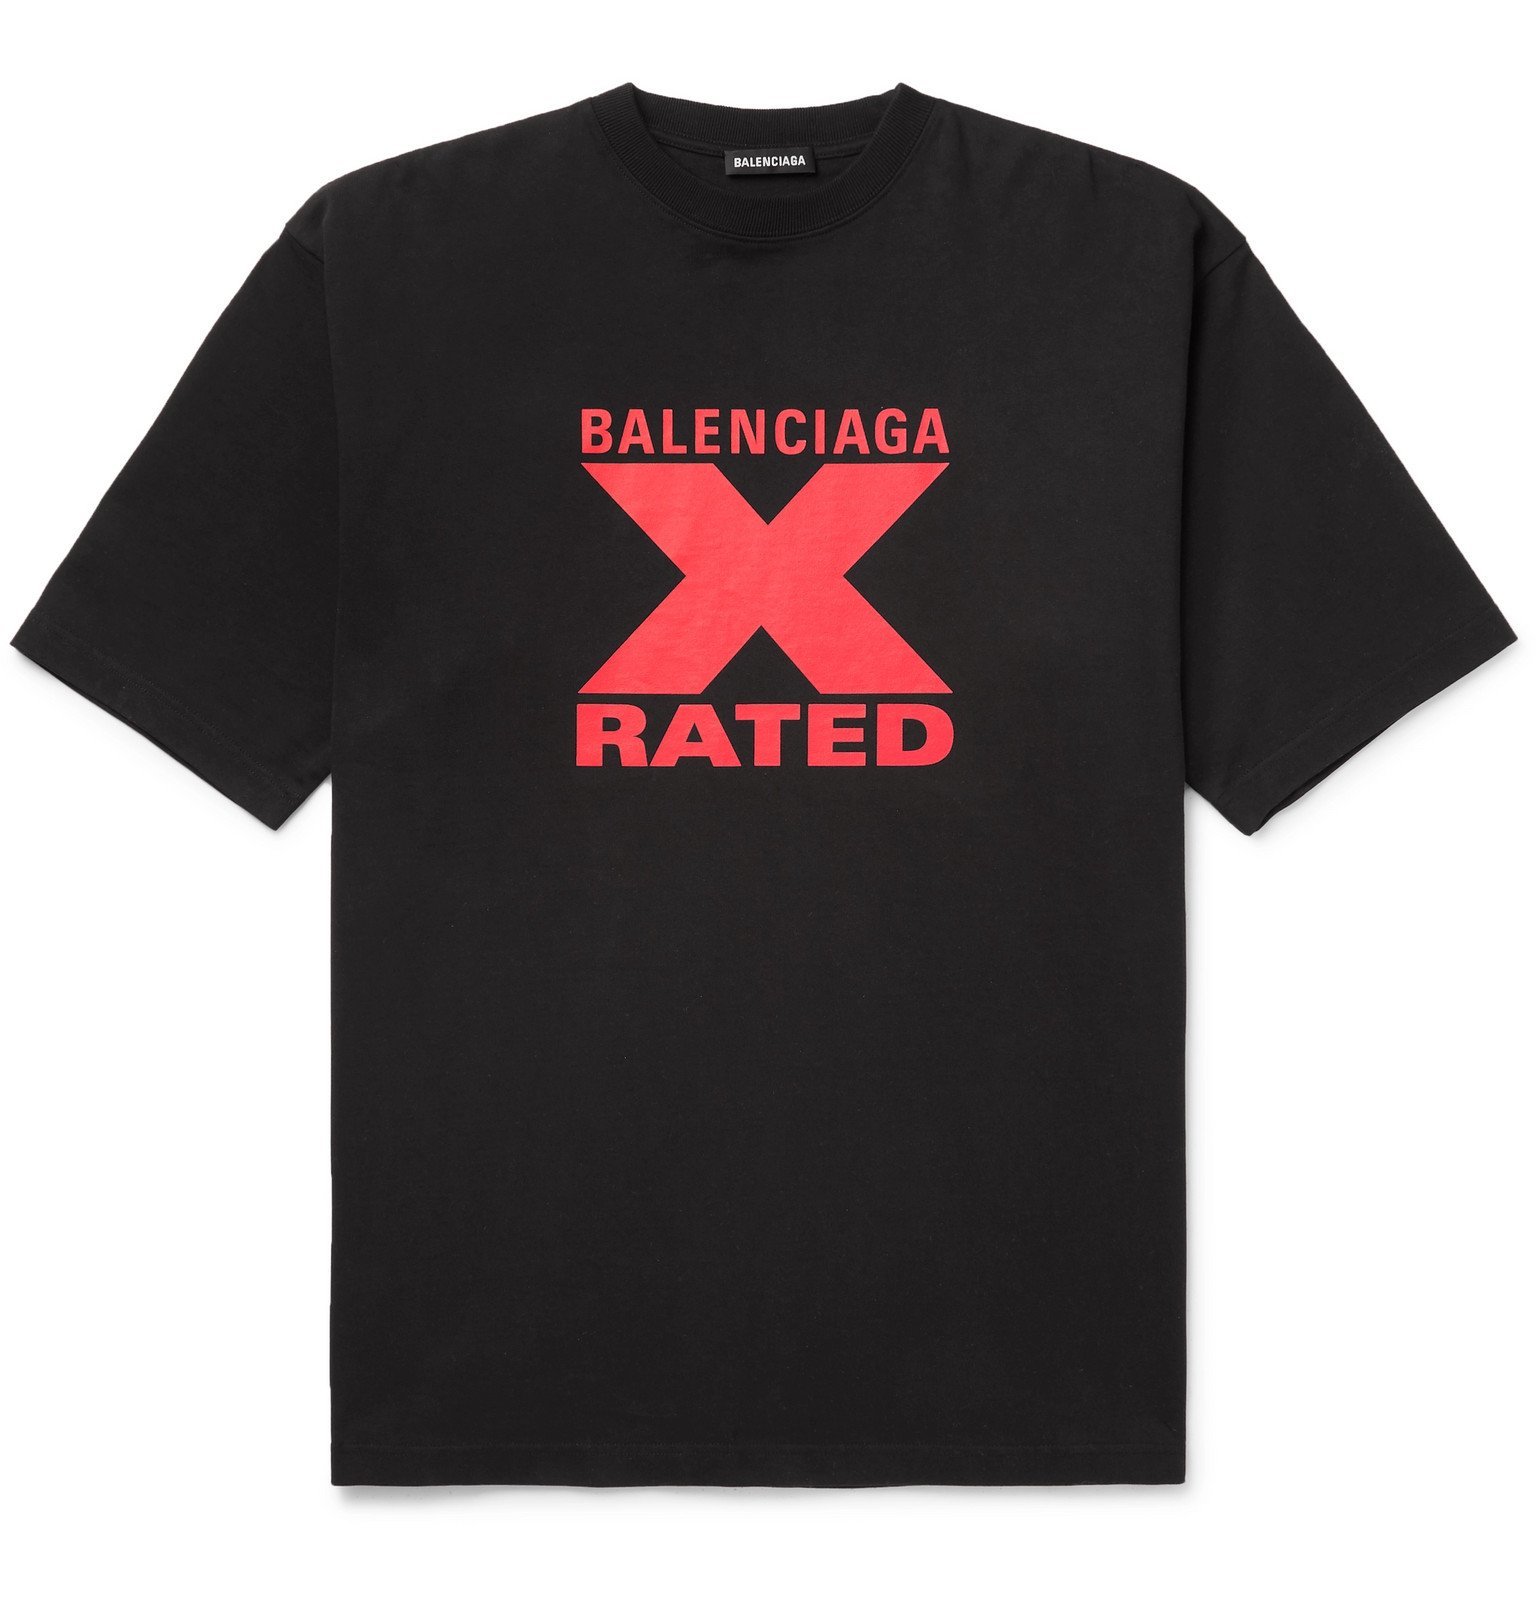 Balenciaga - Printed Cotton-Jersey T-Shirt - Black Balenciaga